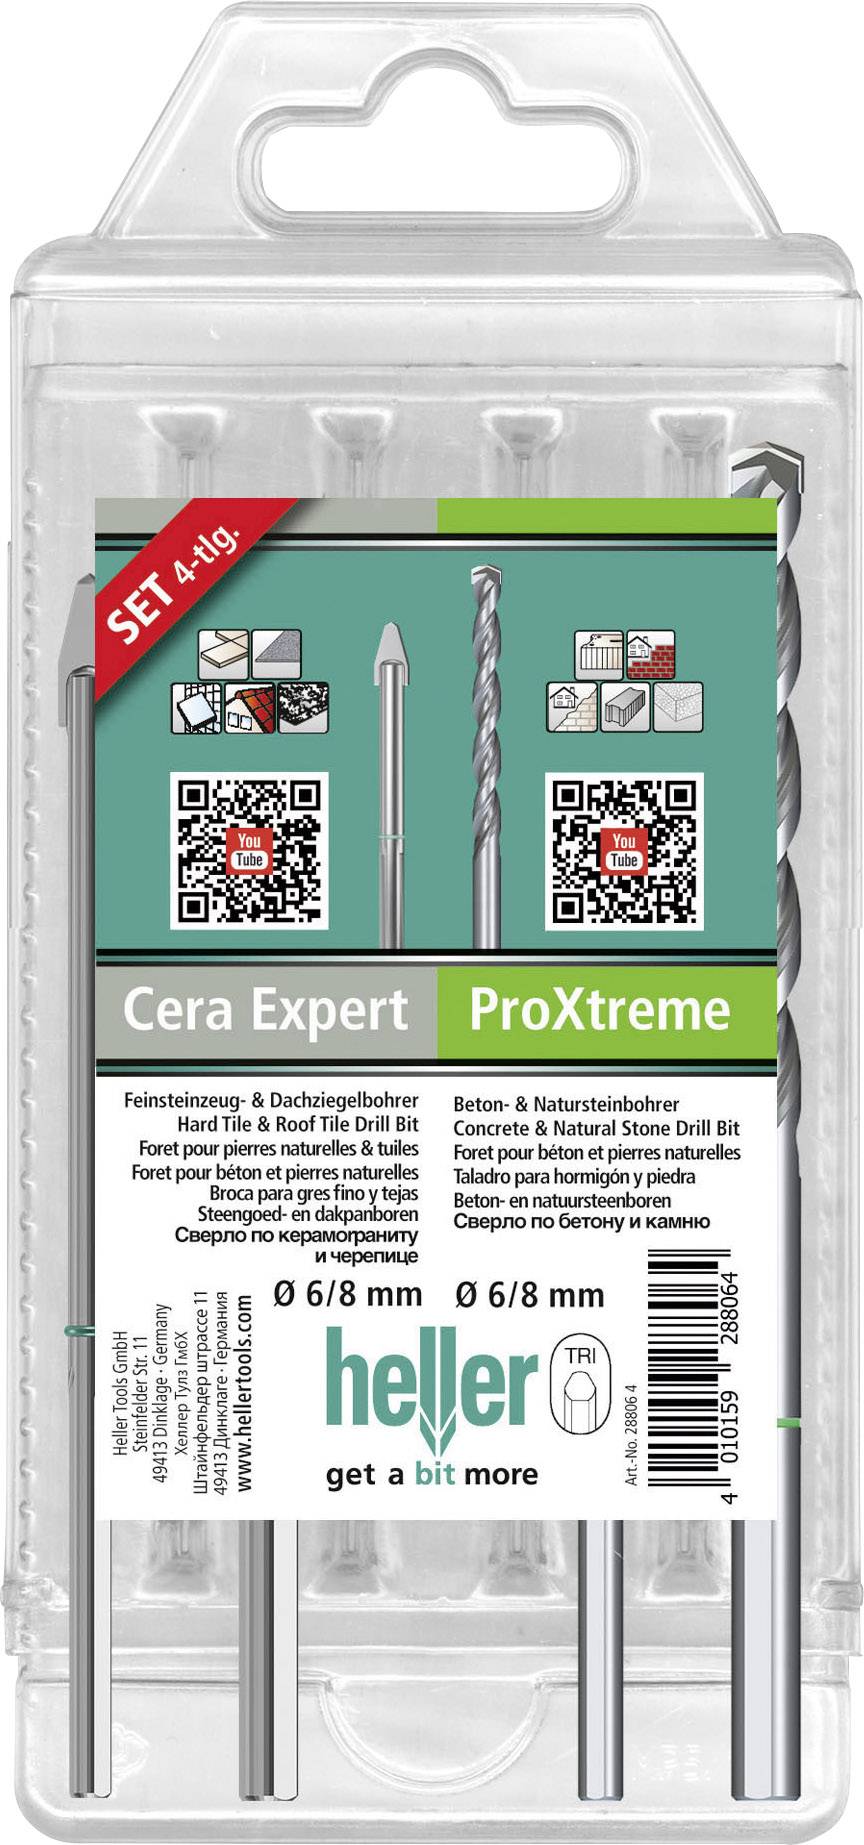 HELLER Cera Expert + ProXtreme 28813 2 Hartmetall Dachziegelbohrer 4teilig Dreikantschaft 1 Set